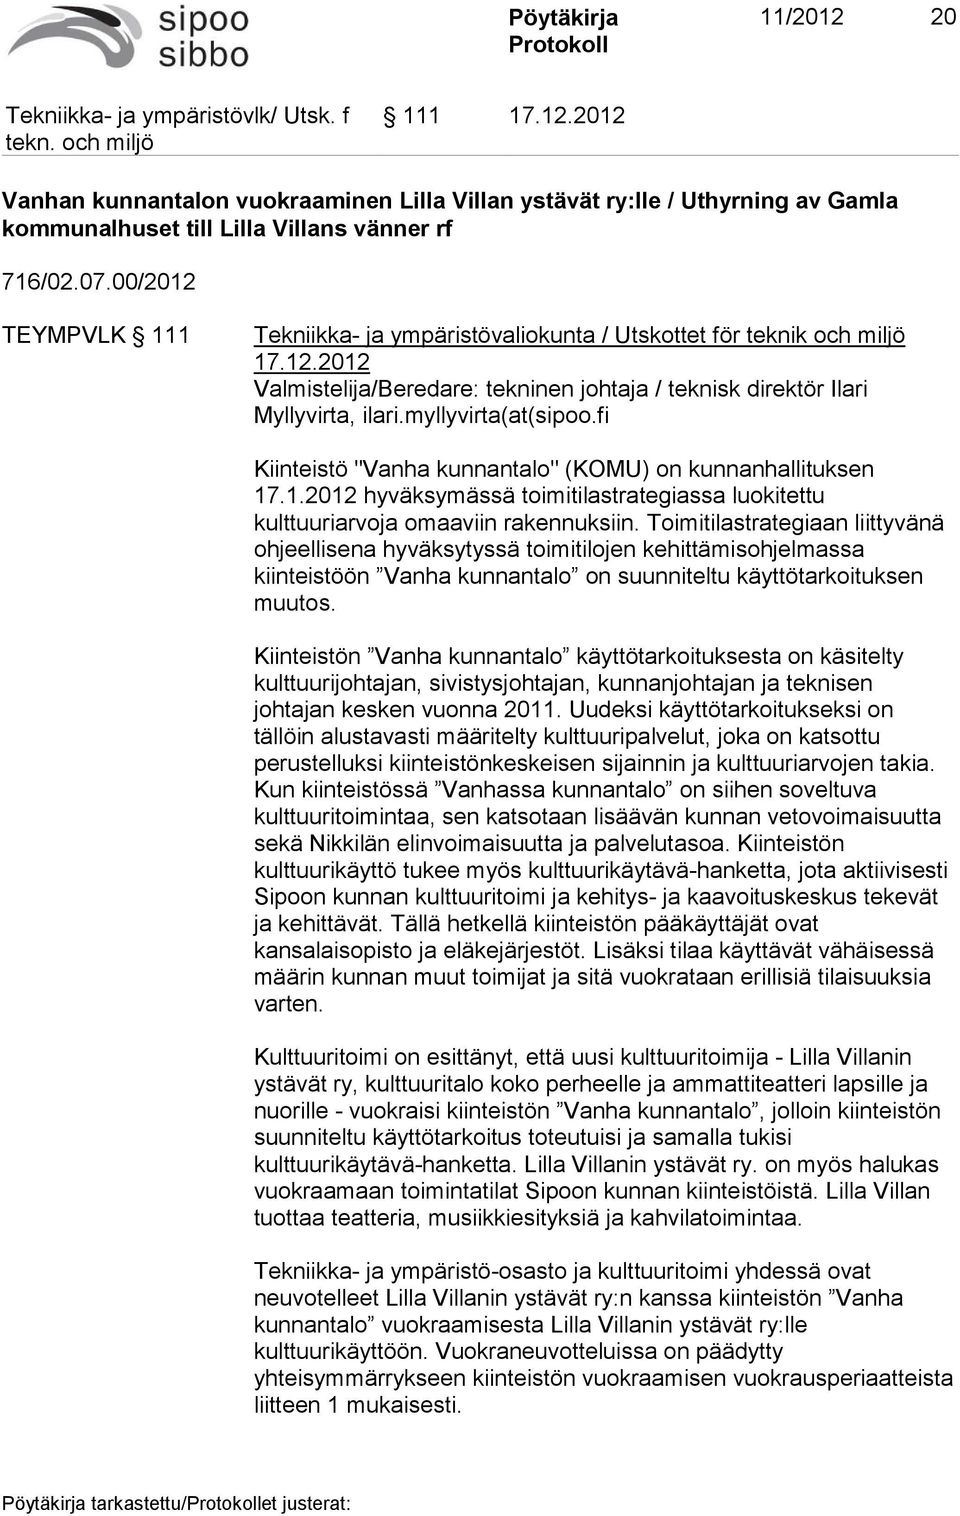 myllyvirta(at(sipoo.fi Kiinteistö "Vanha kunnantalo" (KOMU) on kunnanhallituksen 17.1.2012 hyväksymässä toimitilastrategiassa luokitettu kulttuuriarvoja omaaviin rakennuksiin.